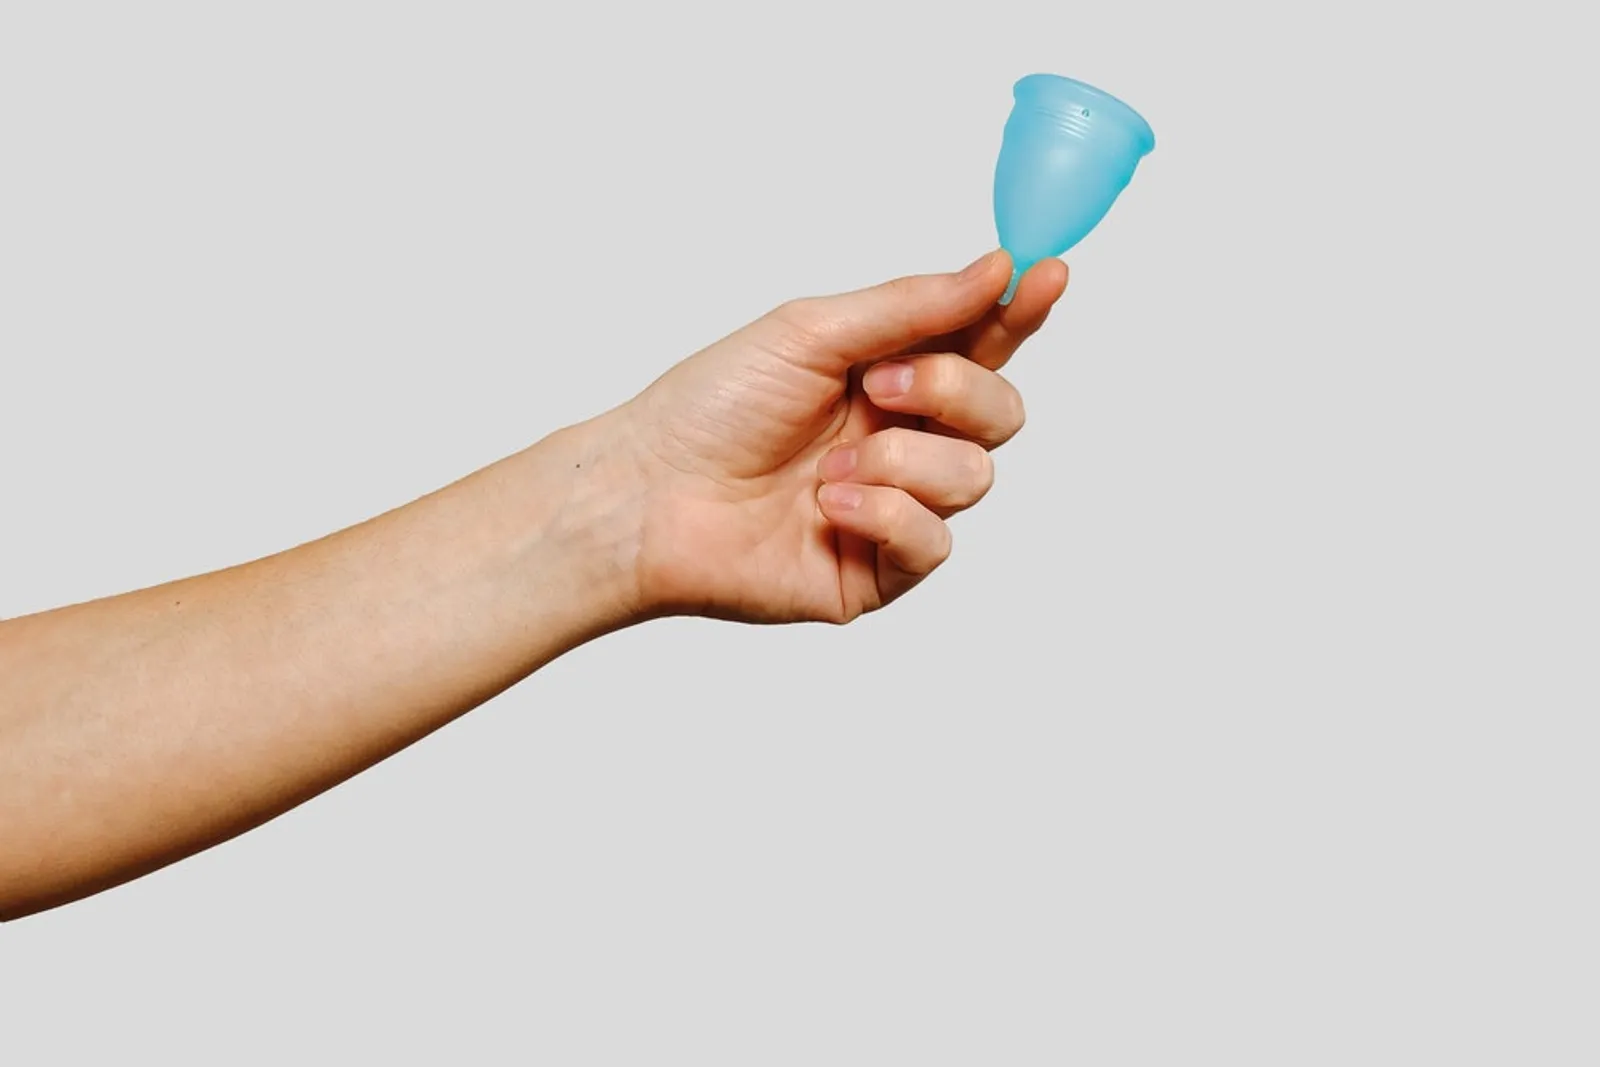 Nggak Sakit, Ini 7 Tips Memasang Menstrual Cup untuk Pertama Kalinya